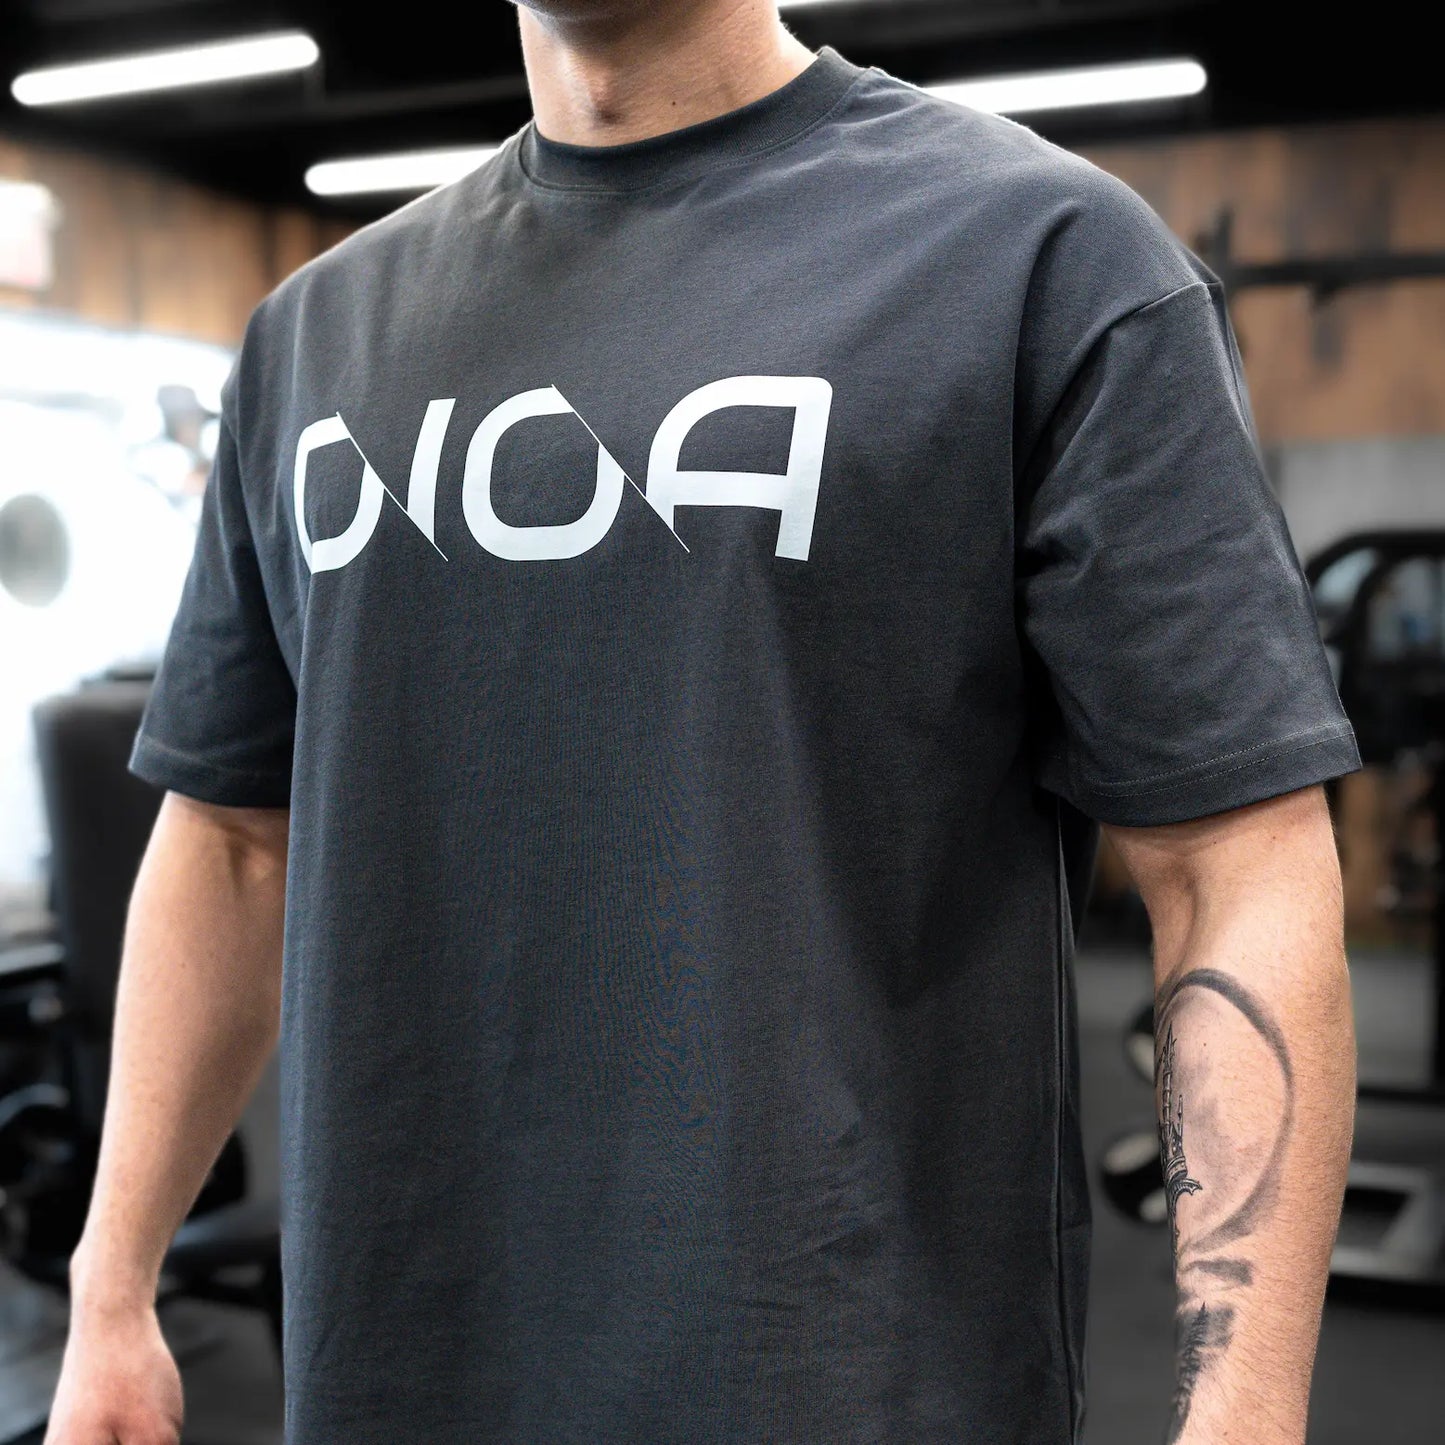 Dioa Fitness Apparel - Oversize T-shirt DIOA